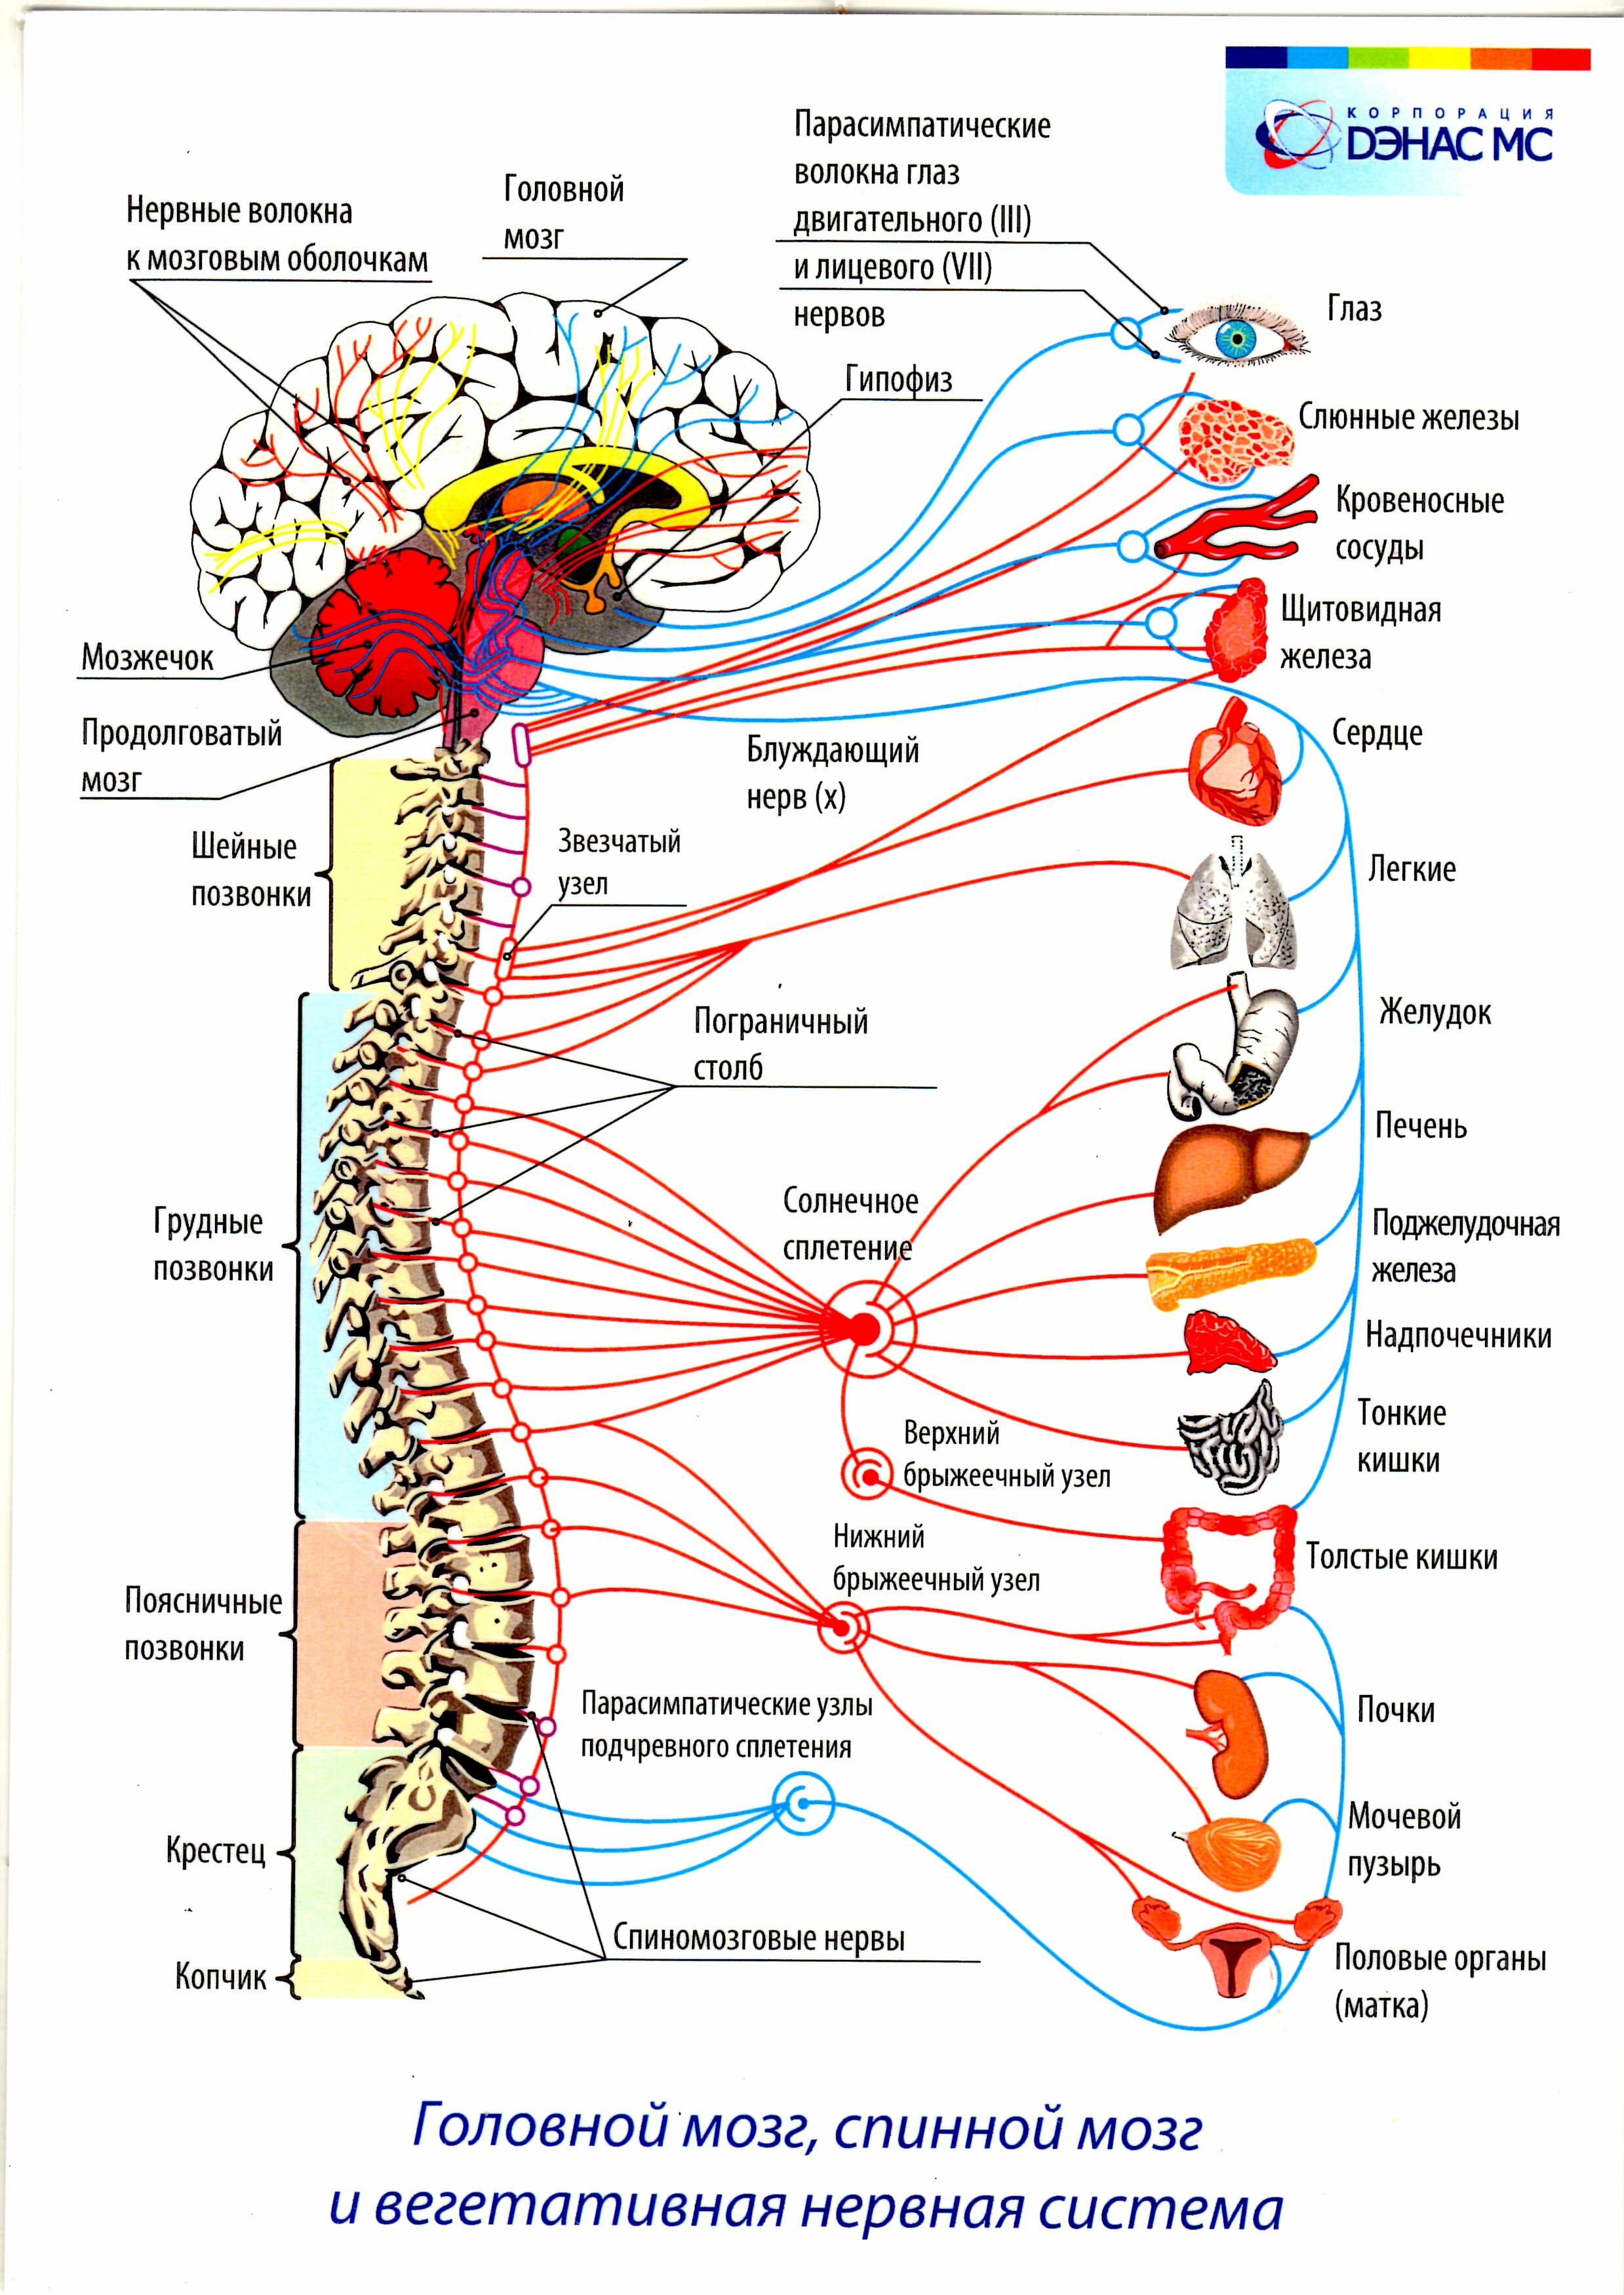 Связь внутренняя с бывшим. Вегетативная нервная система внутренние органы. Вегетативная нервная система схема спинного мозга. Иннервация позвоночника схема нервов. Схема иннервации вегетативной нервной системы.